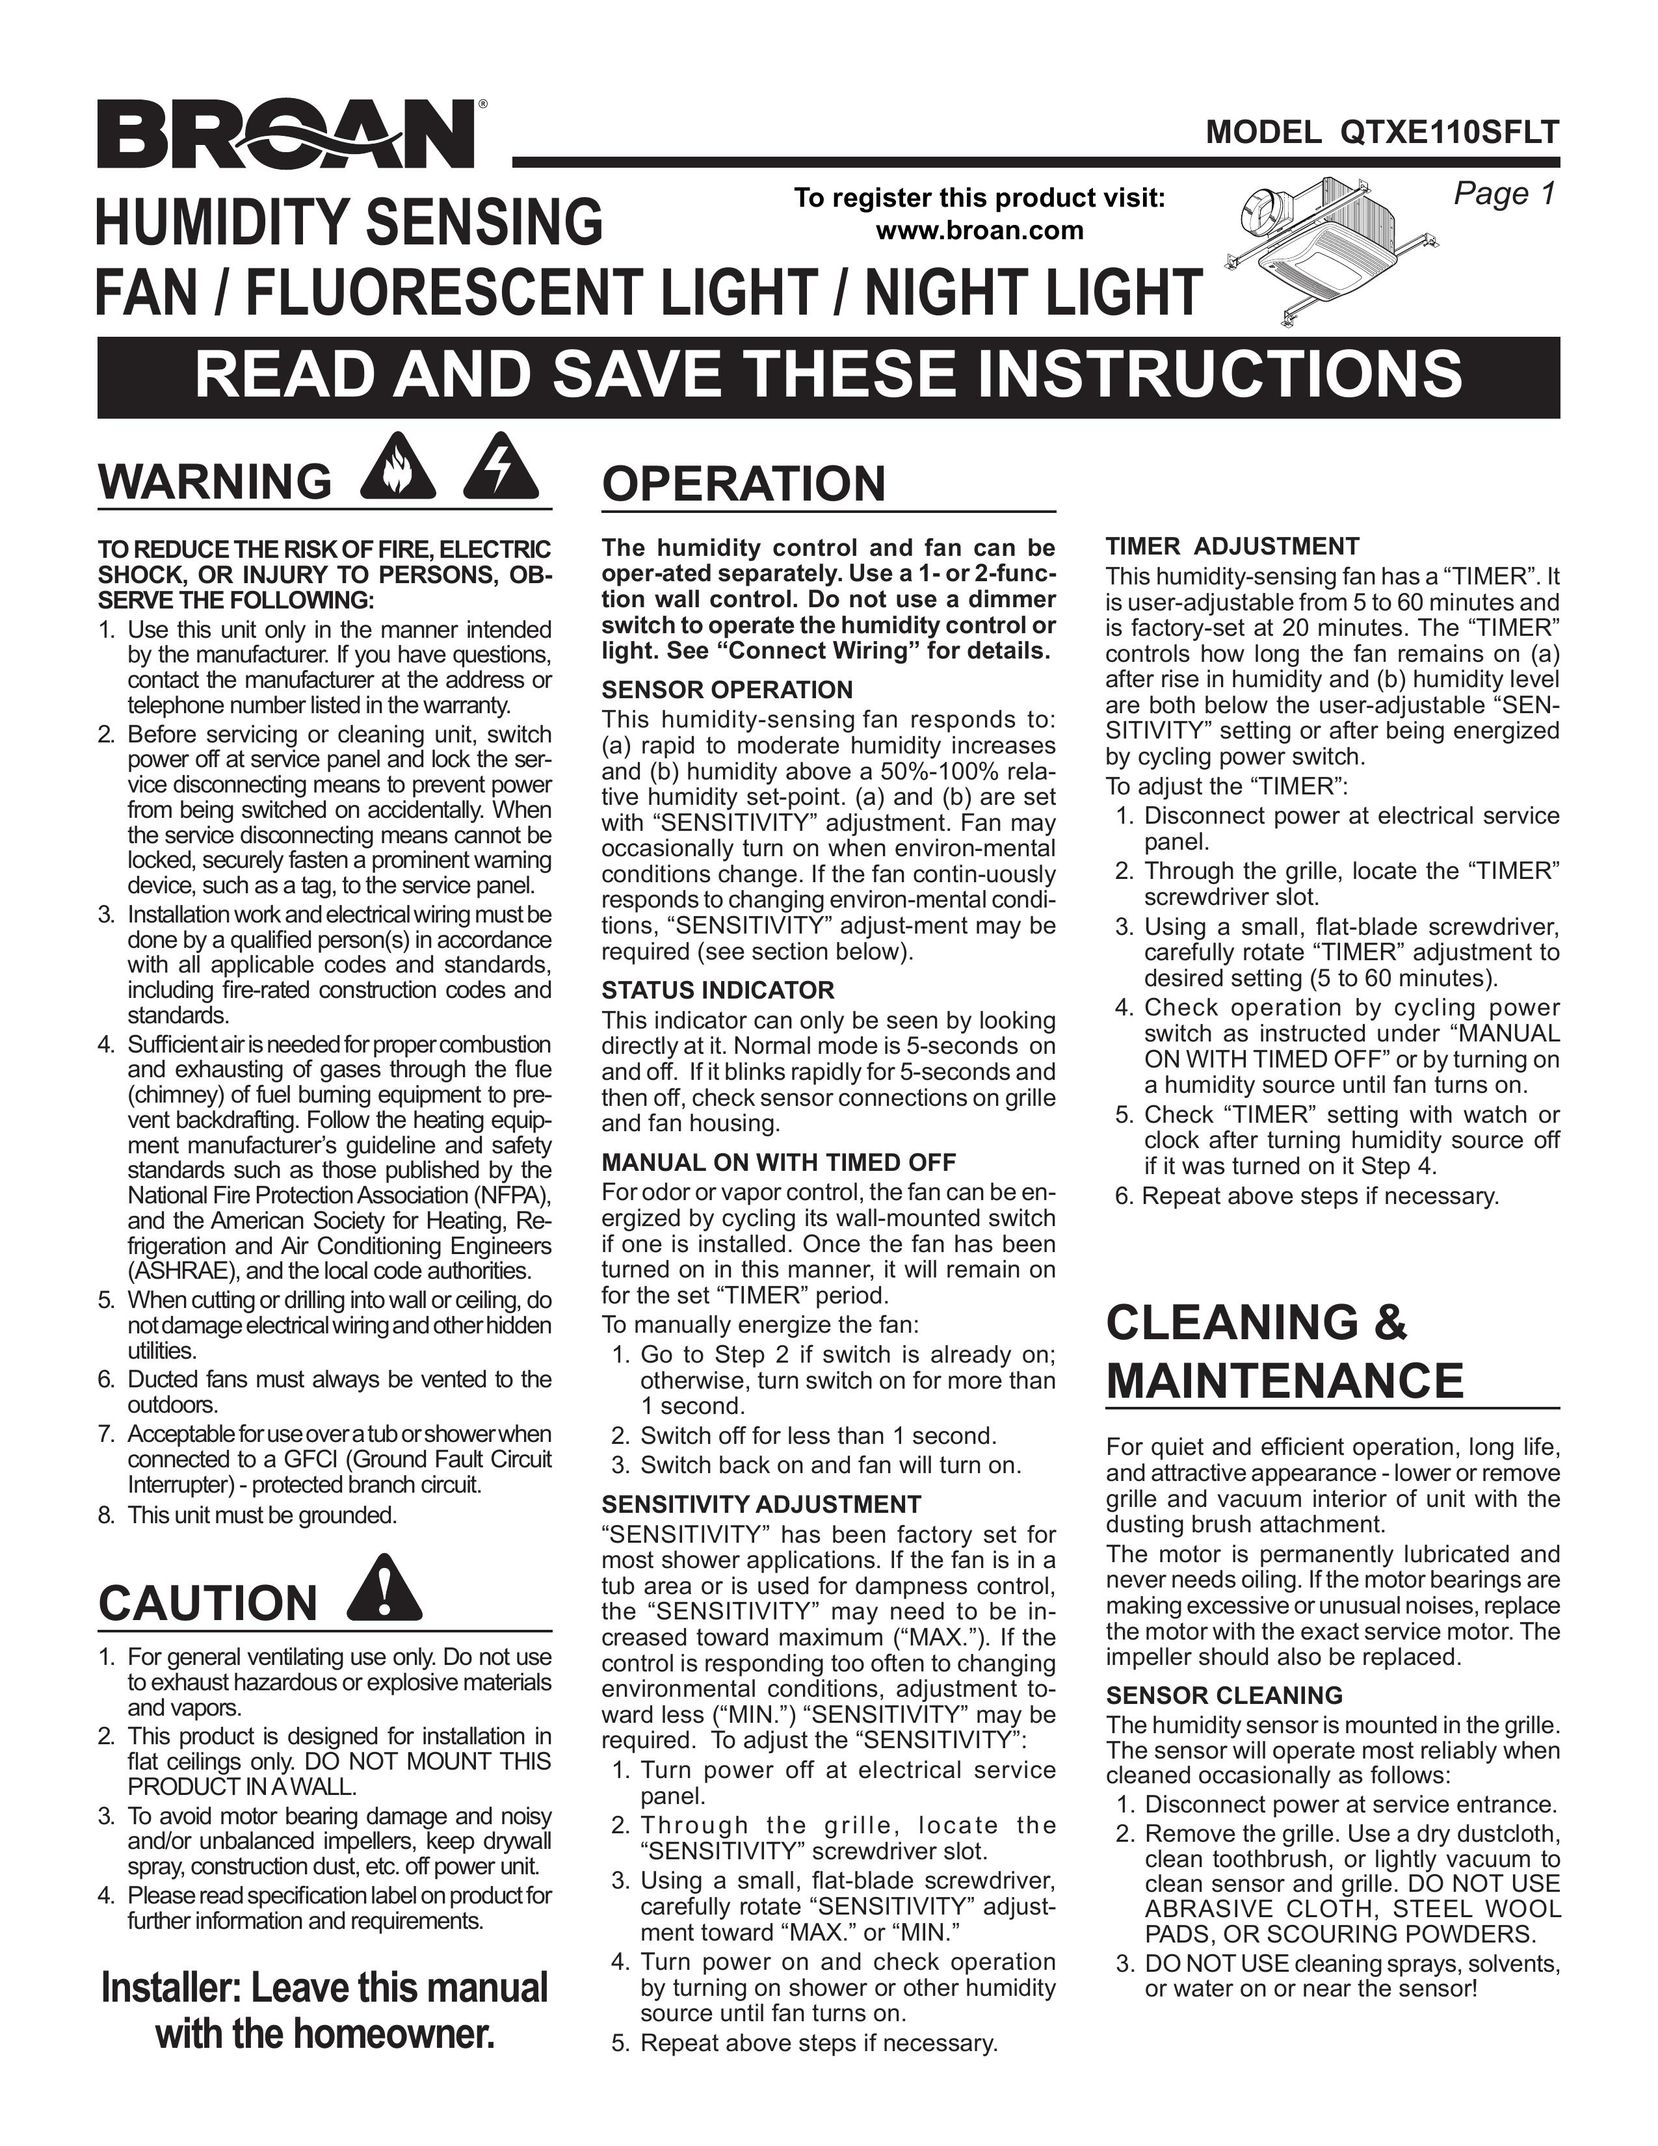 Broan QTXE110SFLT Work Light User Manual